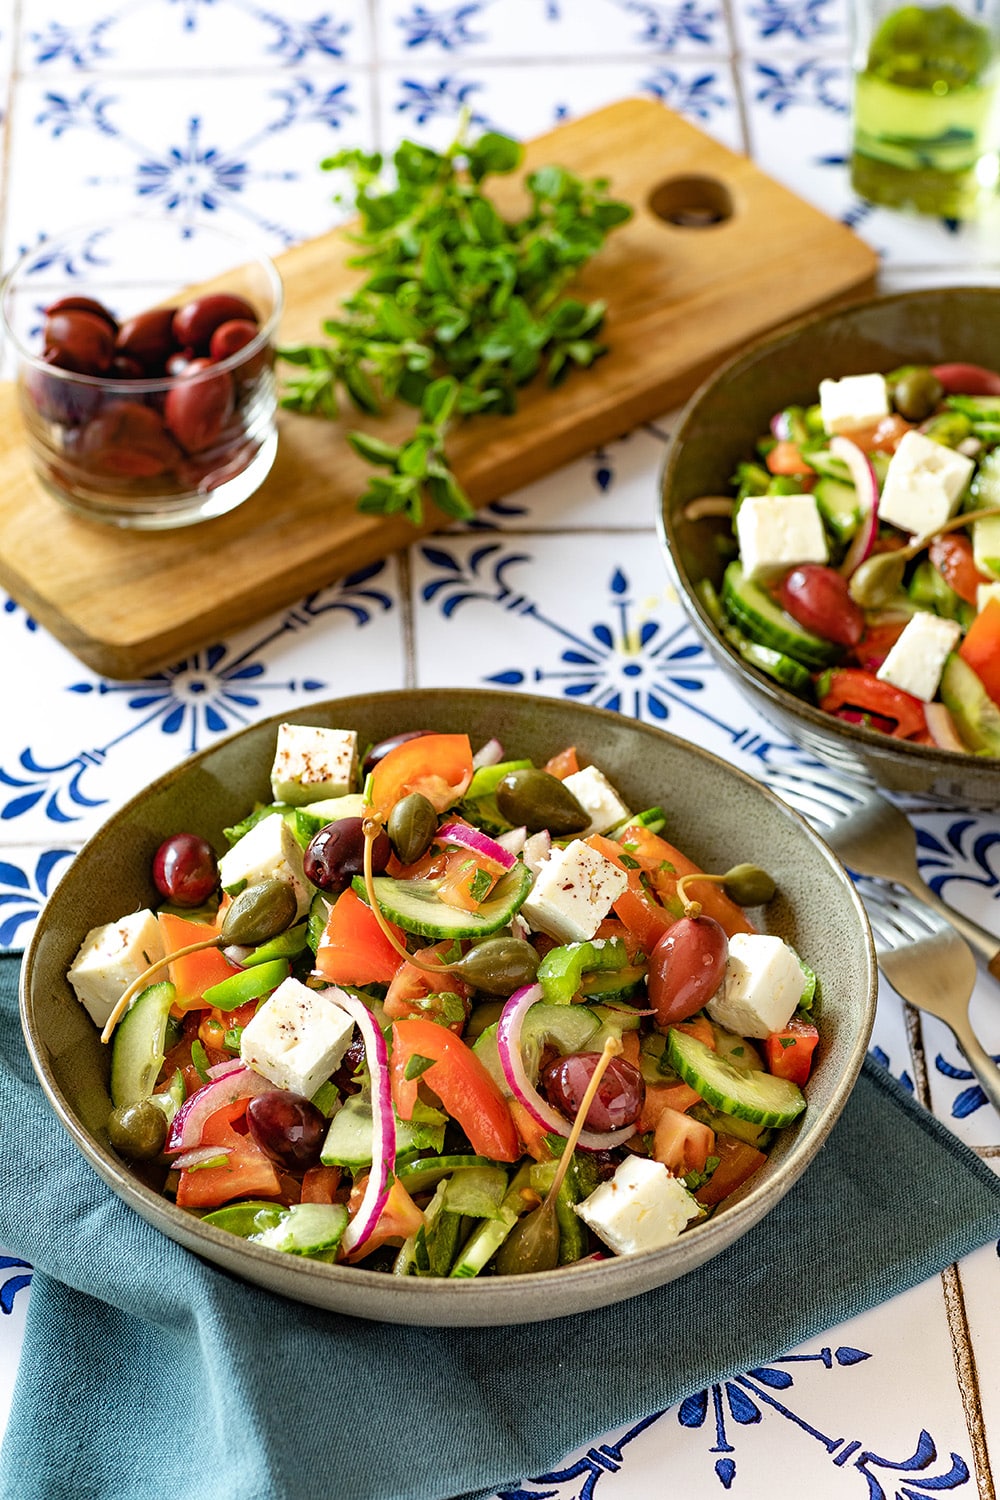 la recette de la vraie salade grecque avec de la feta, des olives kalamata et des câpres.